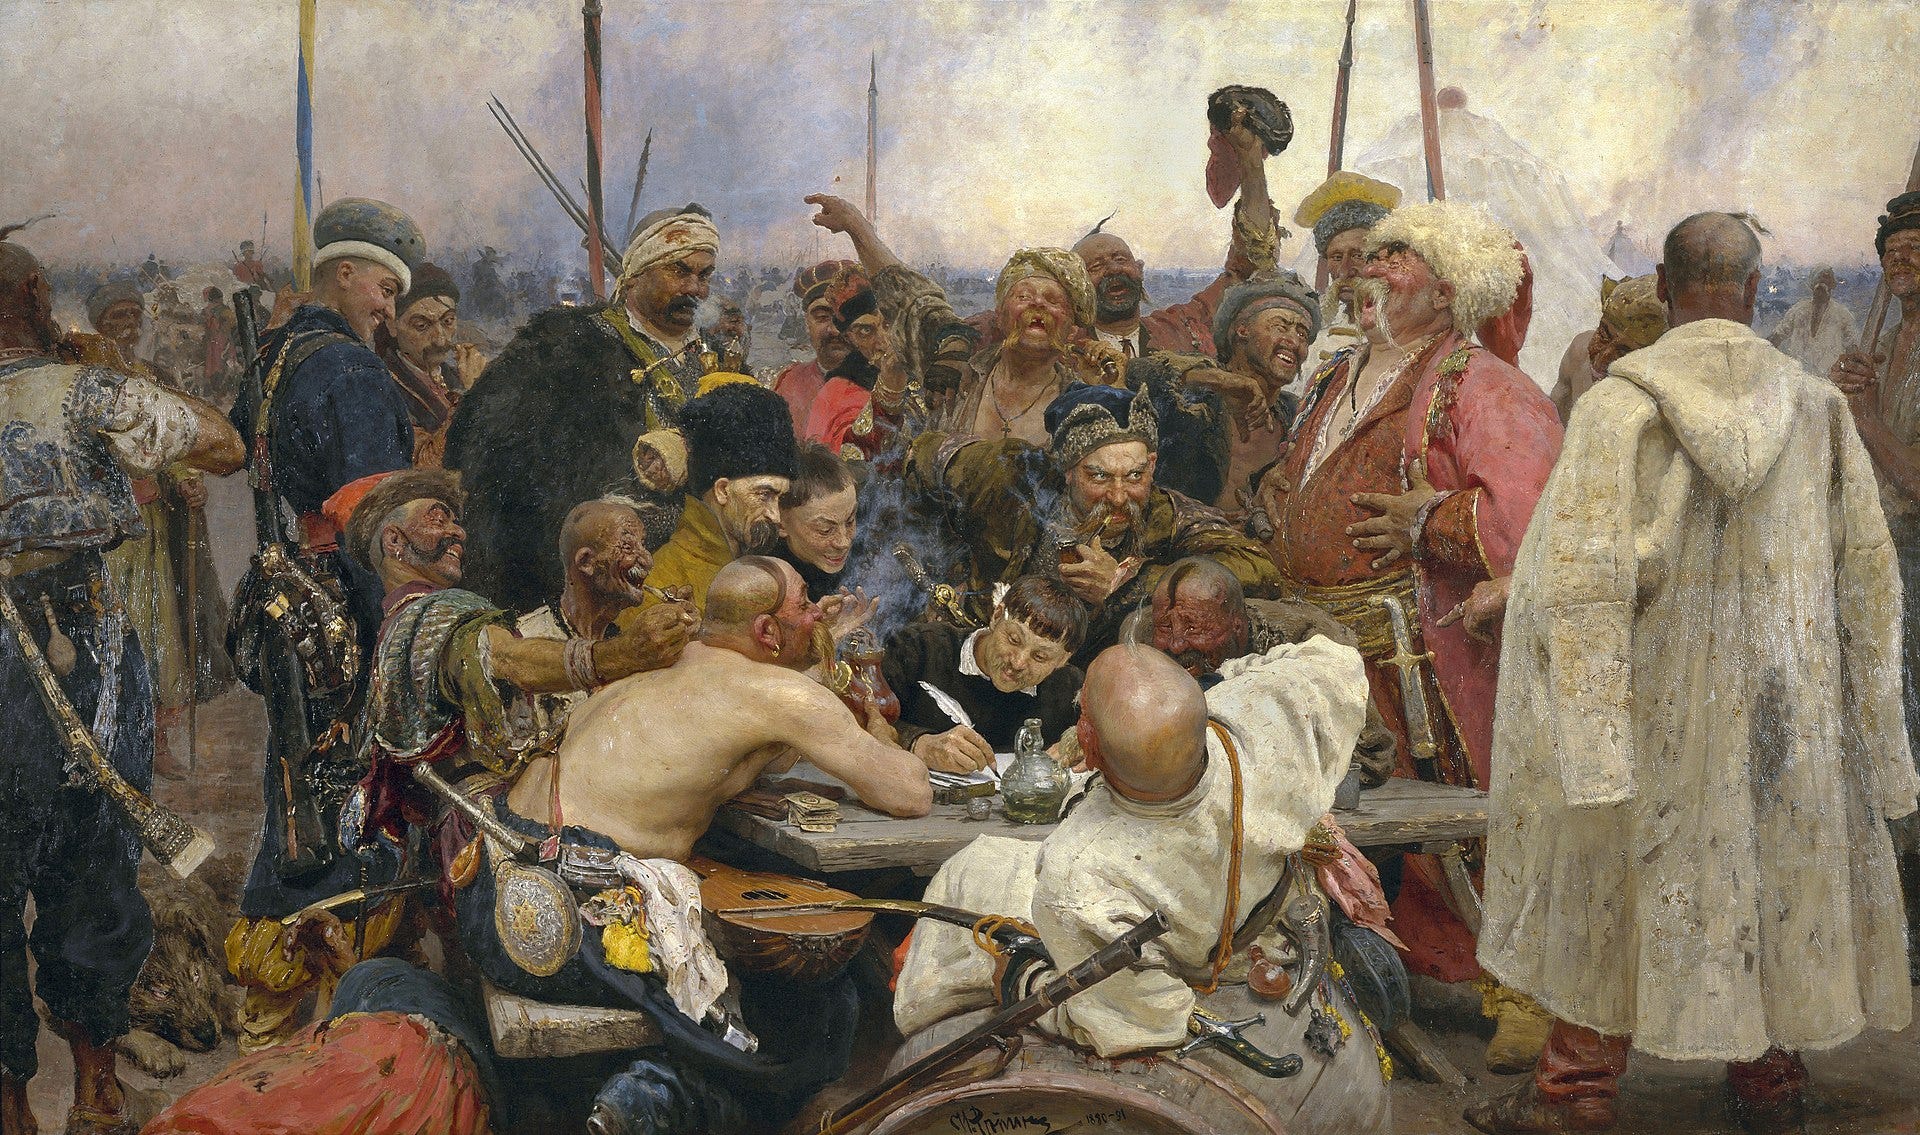 Lhuissets Kunstwerk ist eine Hommage an „Antwort der Saporoschja-Kosaken an den türkischen Sultan“ von Ilja Repin.